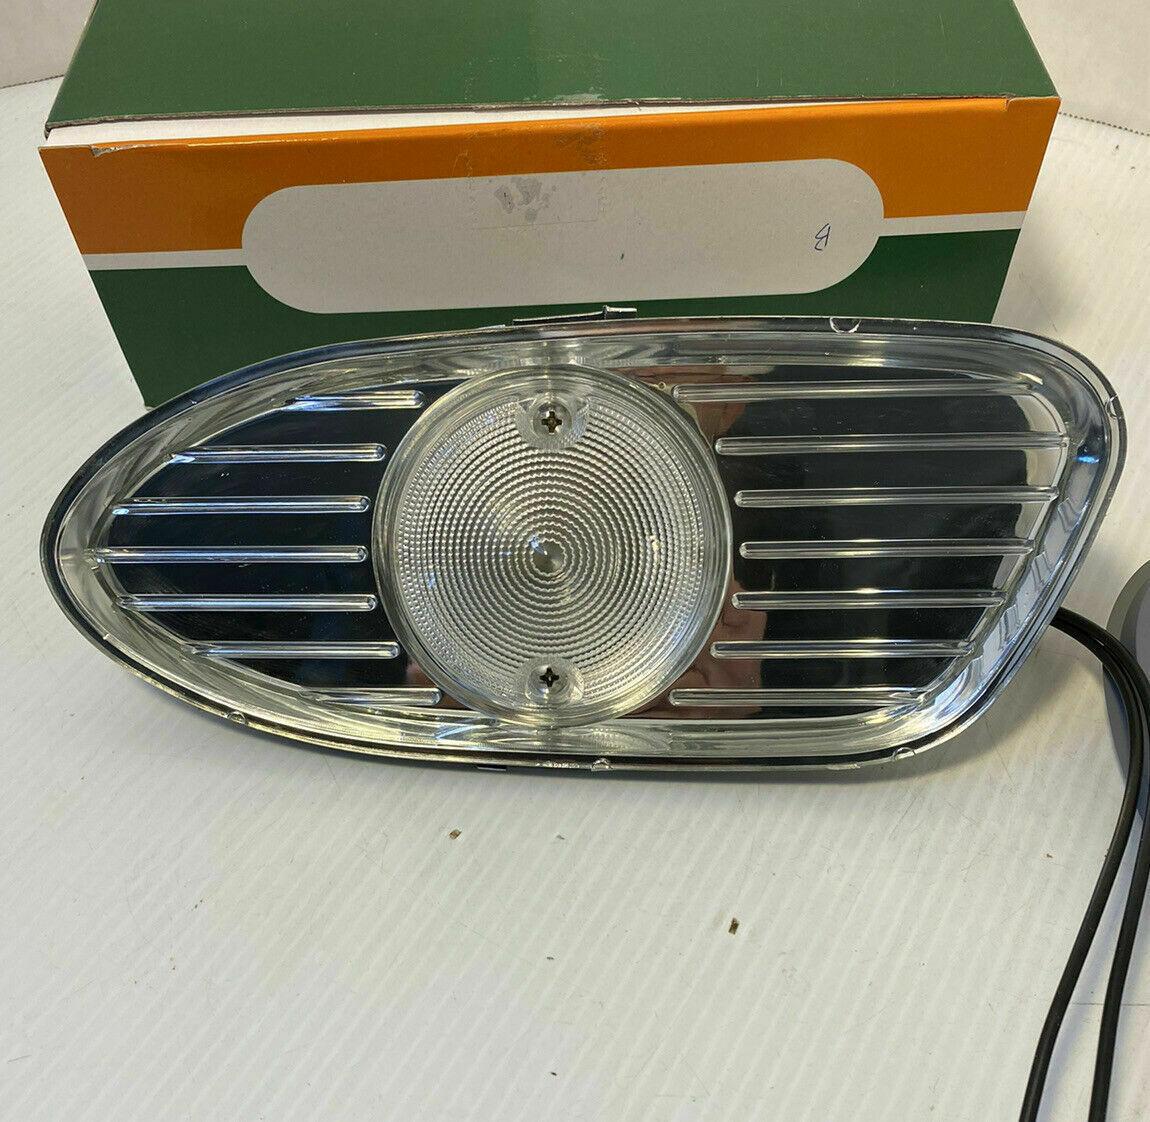 Park Light Lamp: 1958 1959 GMC Truck Park Light Lamp Complete Lens Bezel Housing Wires All Models